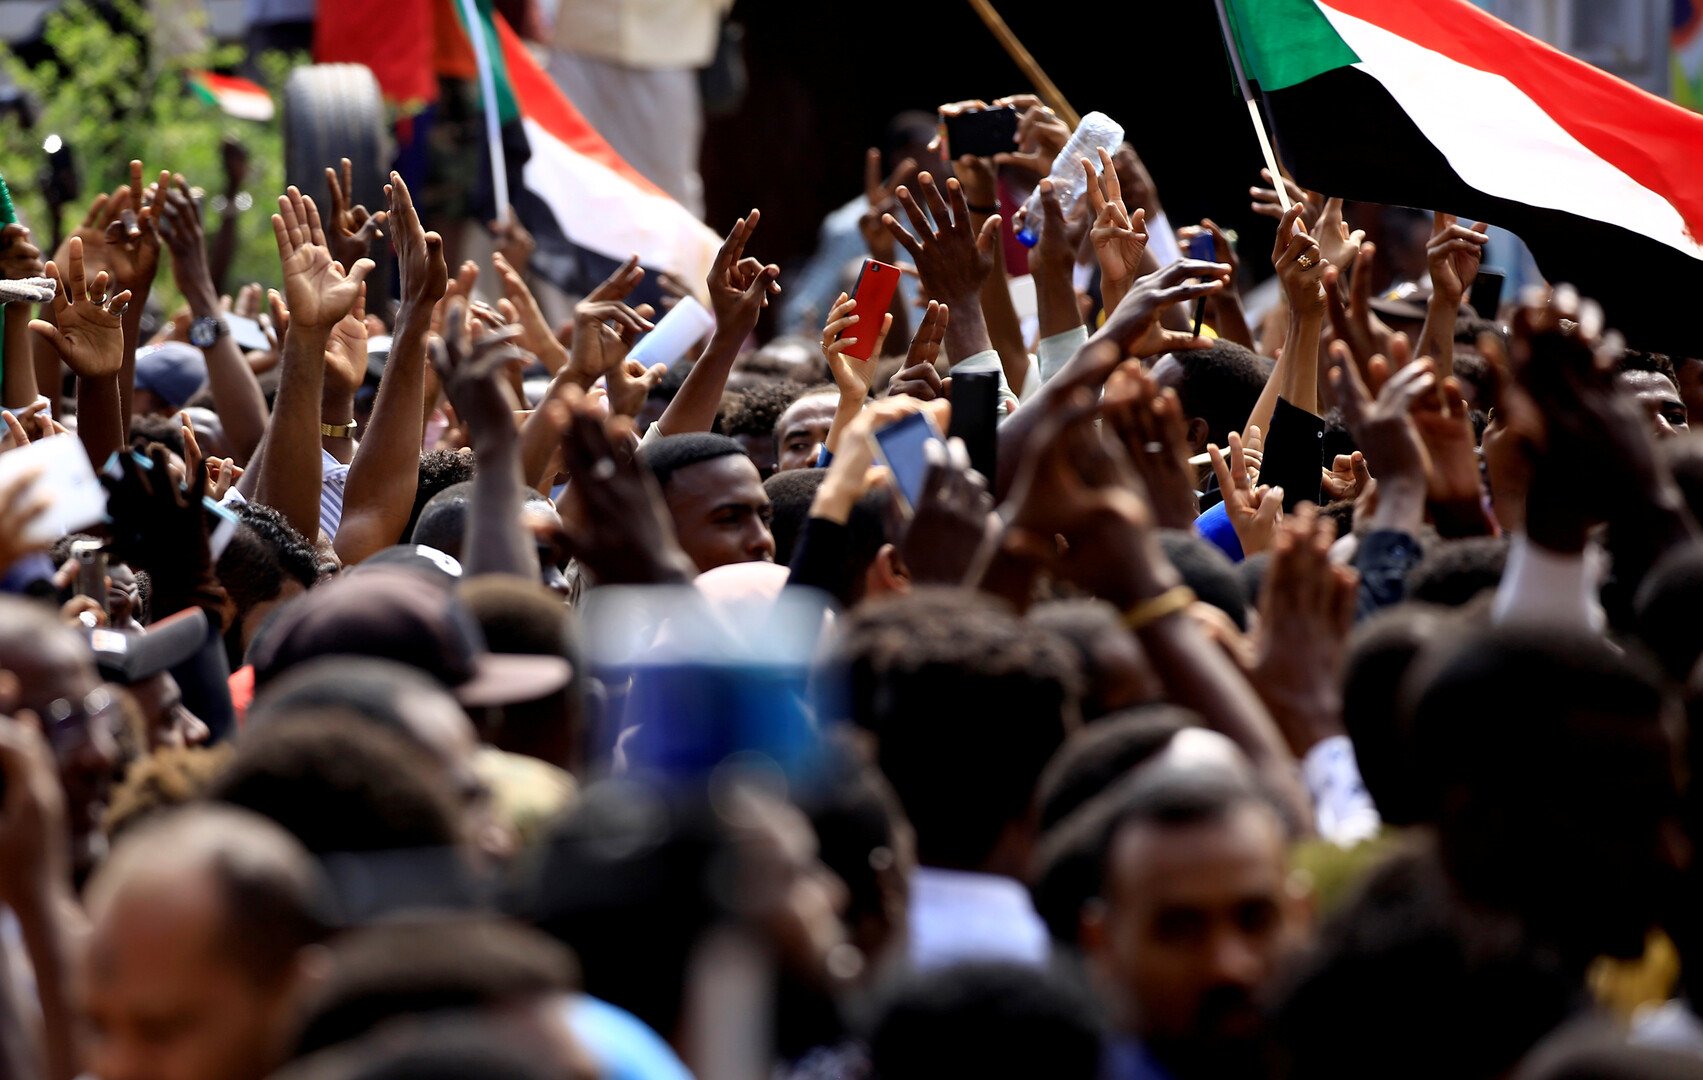 لجنة سودانية بسلطات واسعة للتحقيق في فض اعتصام يونيو الذي قتل فيه العشرات